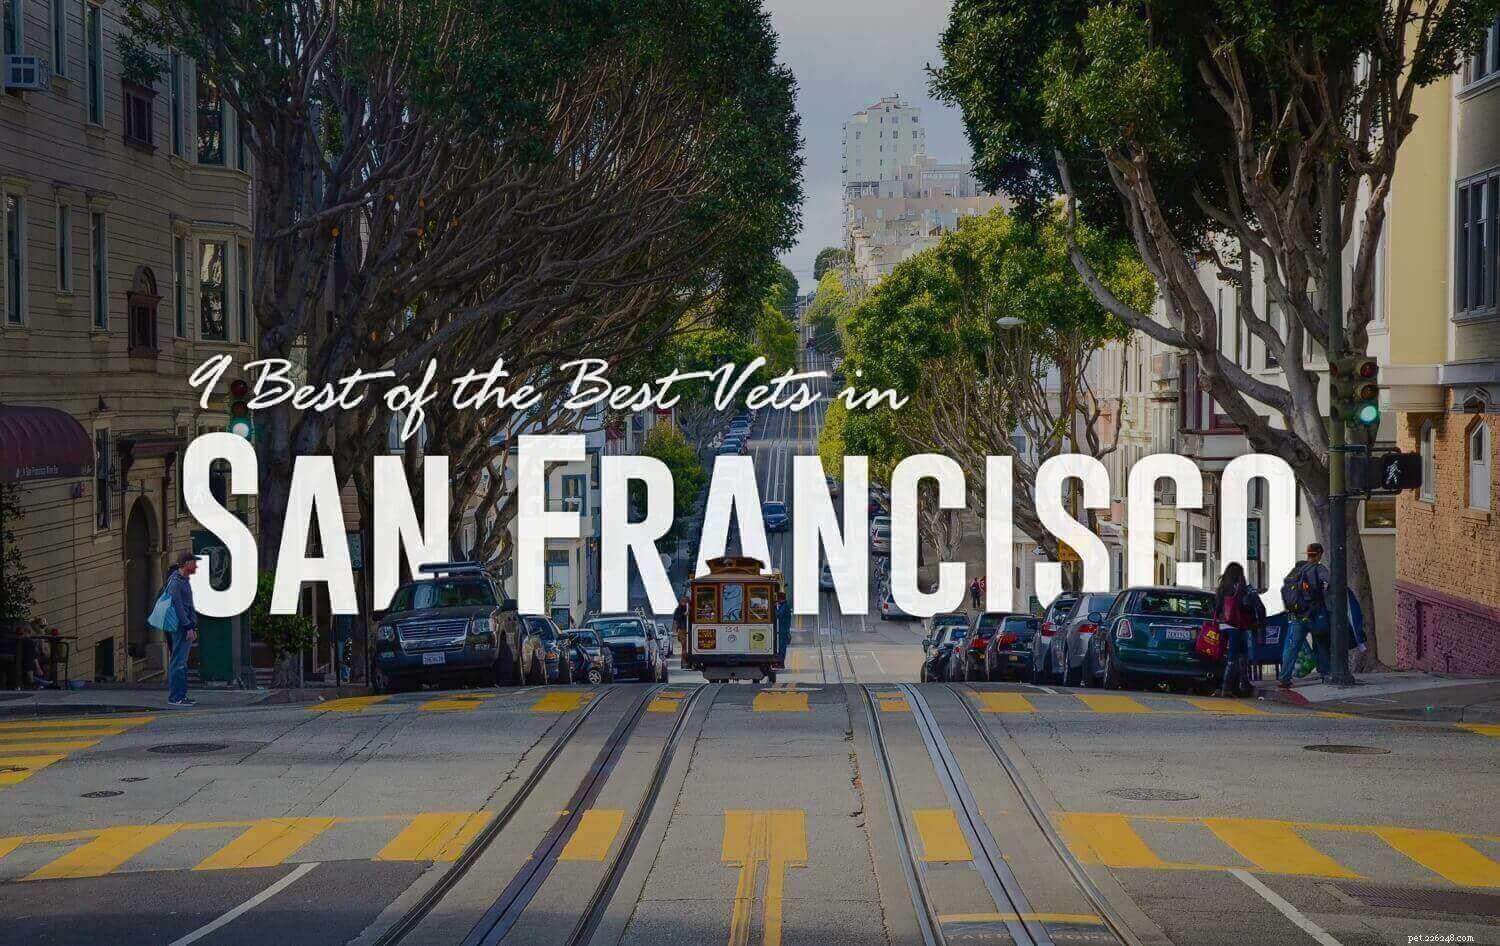 9 I migliori veterinari di San Francisco